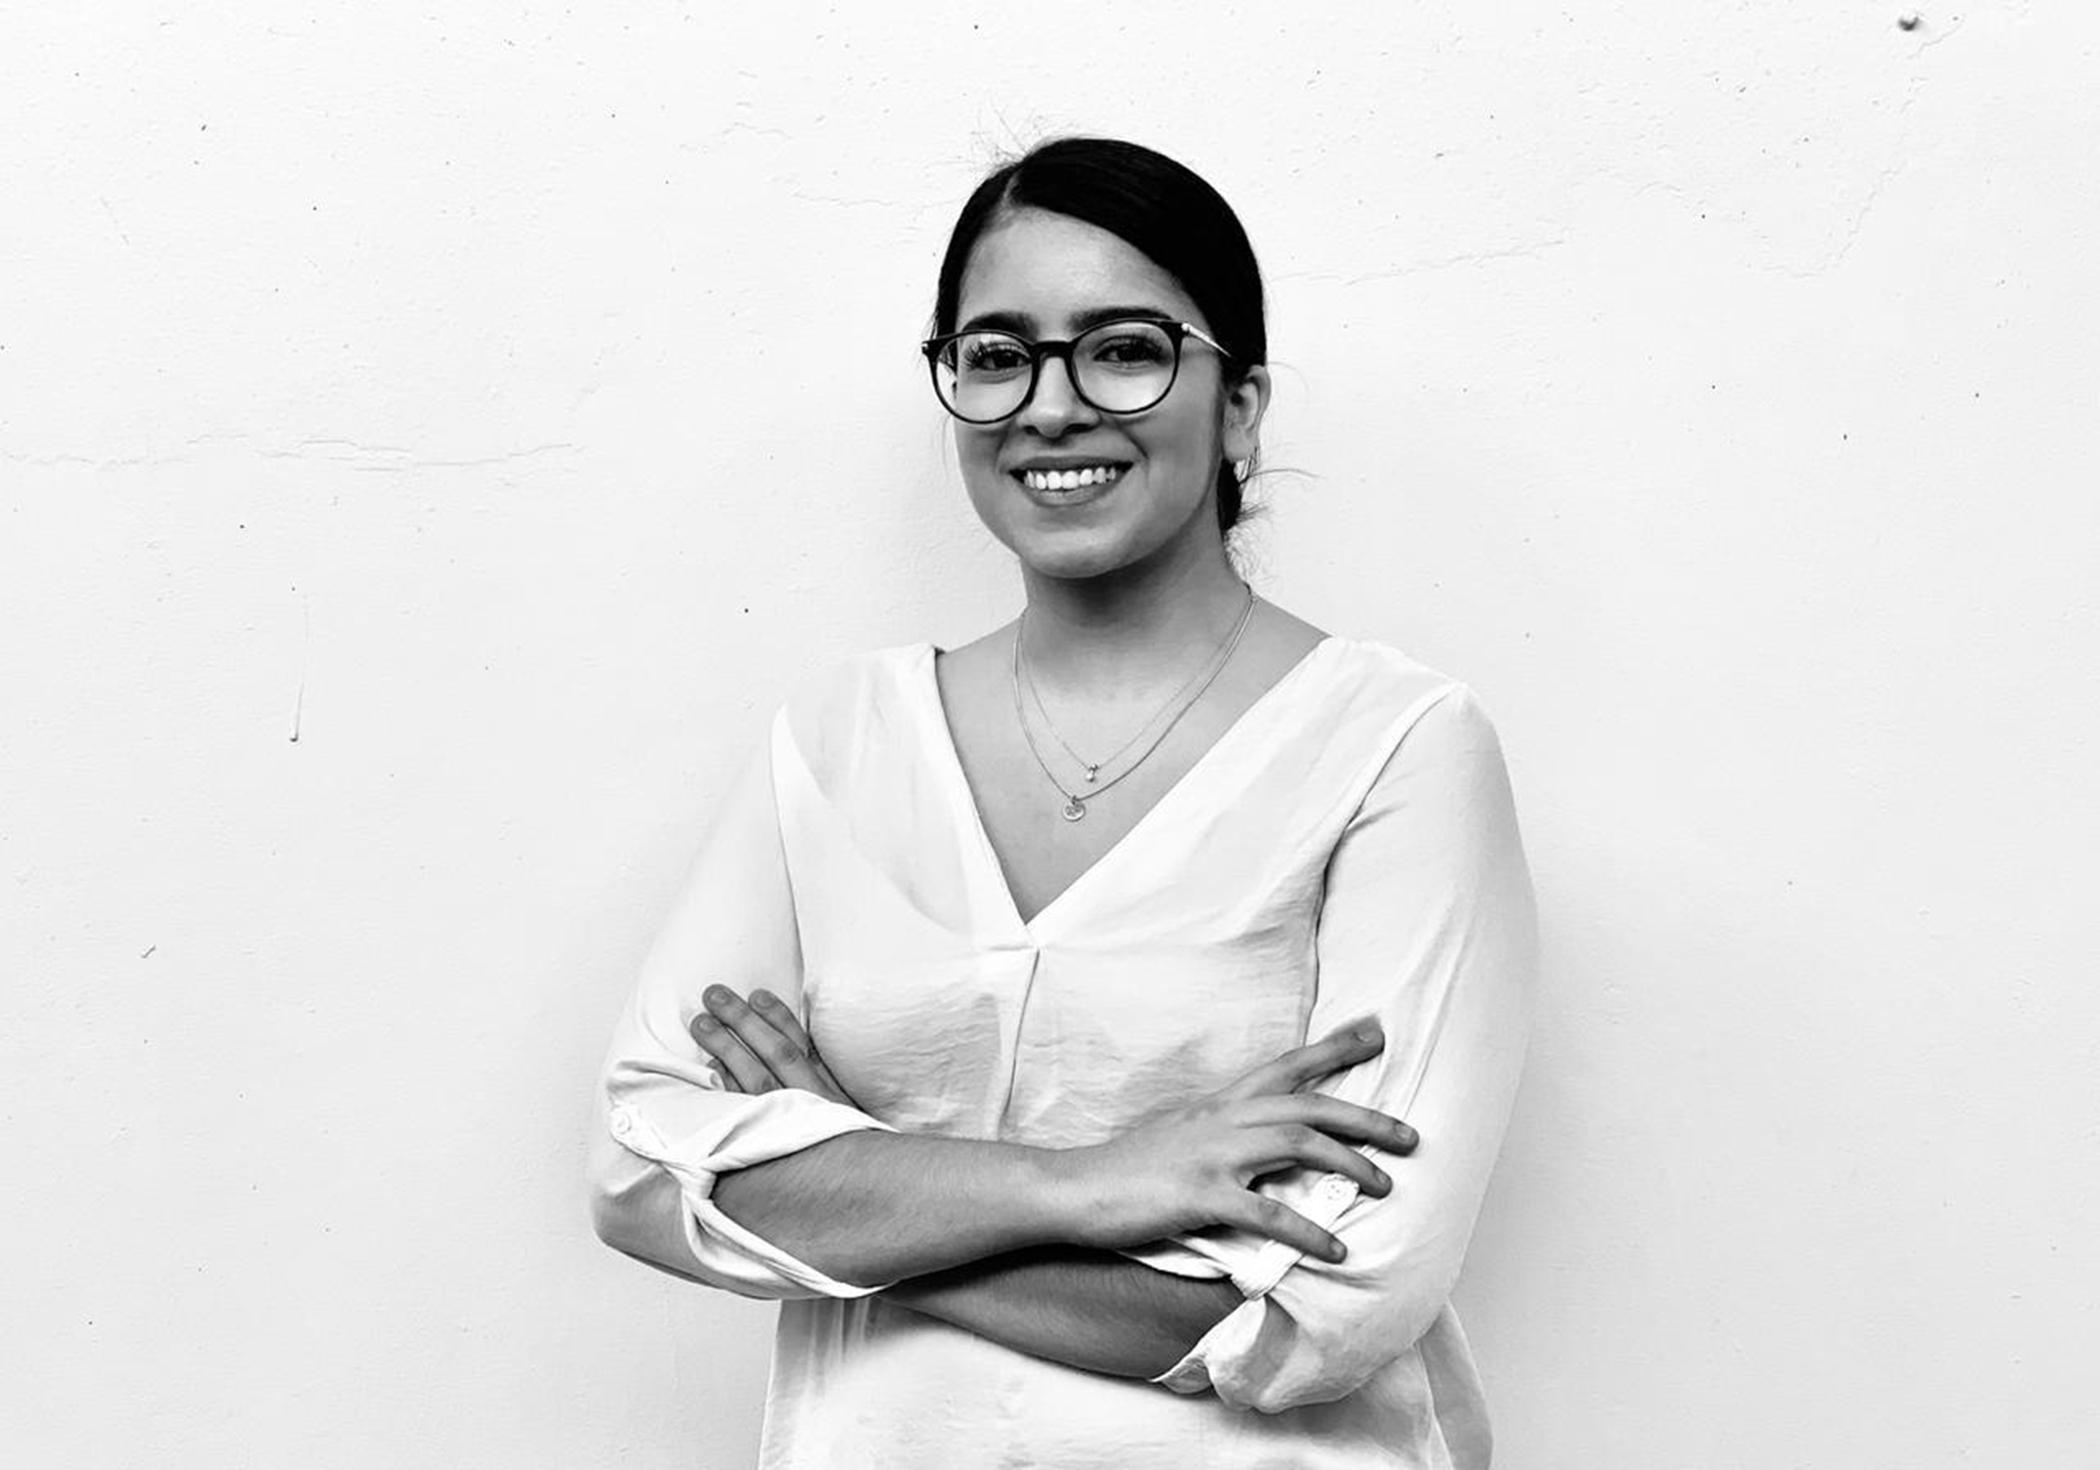 Lorena Valle Cuéllar es licenciada en Economía por la Universidad Centroamericana José Simeón Cañas. Se ha desempeñado como ayudante en cátedras como Género y Economía e Introducción a la Economía Política. Actualmente se desempeña como investigadora en temas vinculados con Políticas Públicas.